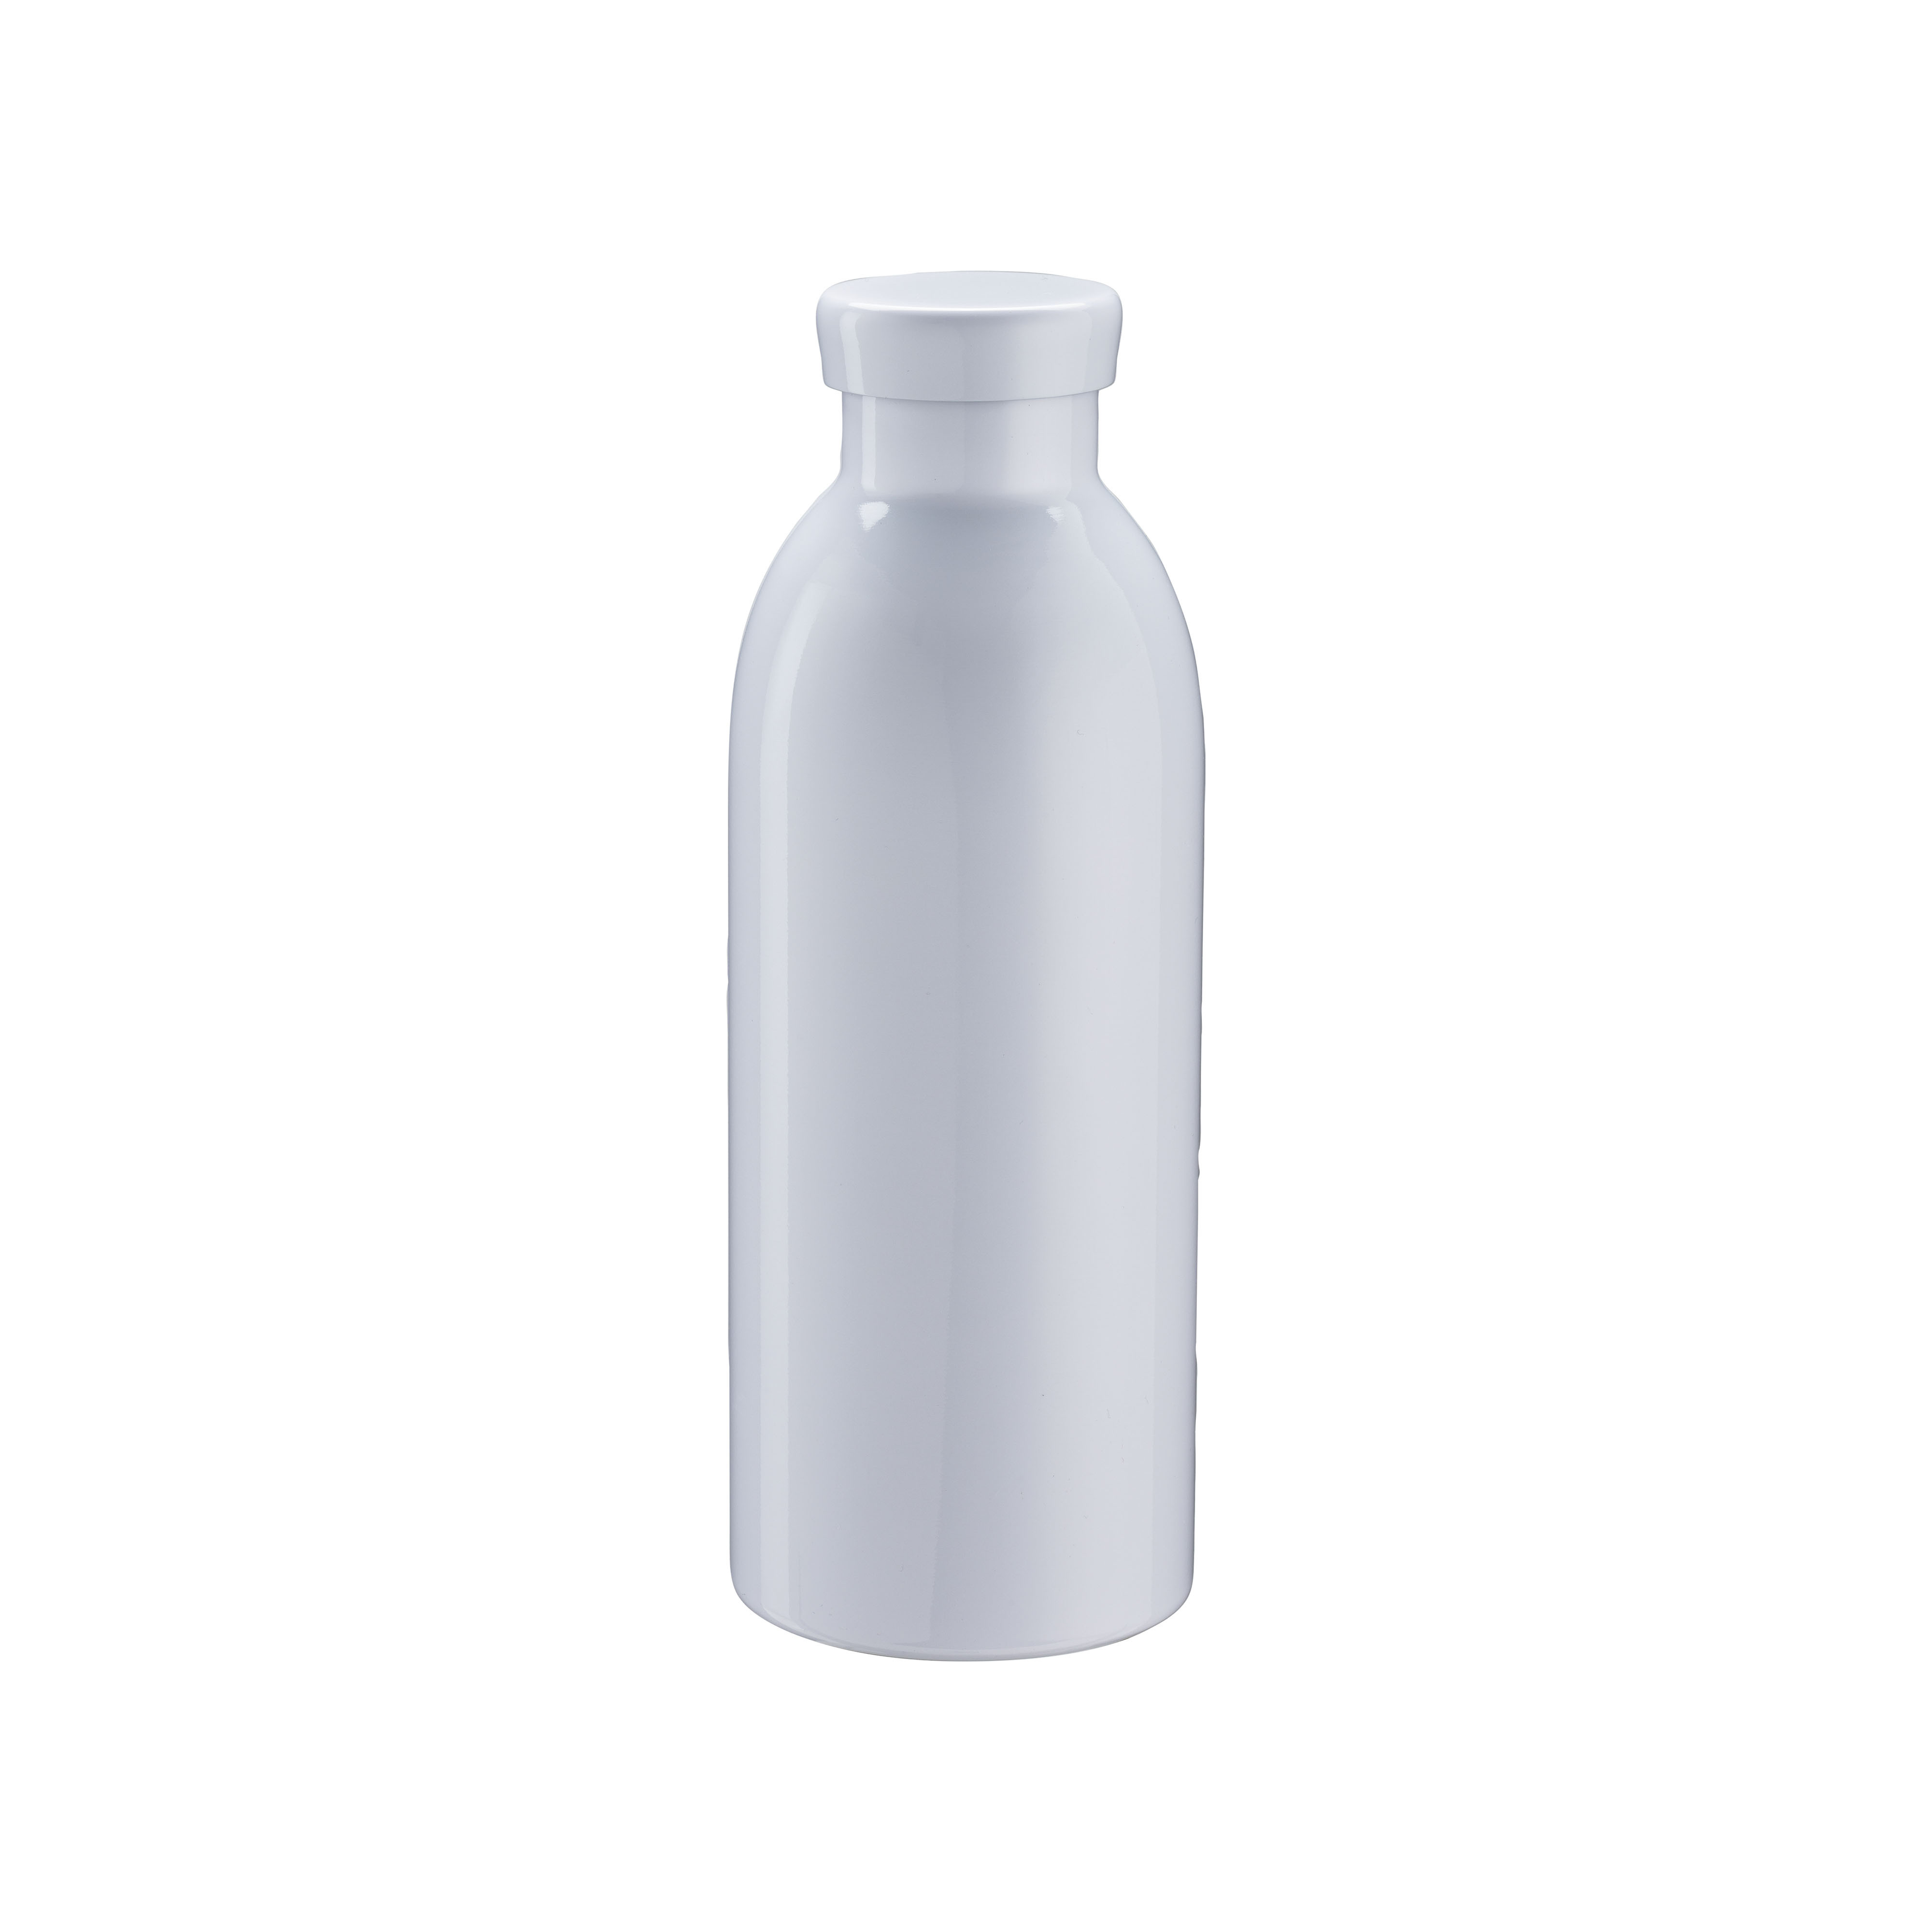 Bottiglia in acciaio inossidabile con doppia parete isolante con tappo in acciaio, 490 ml